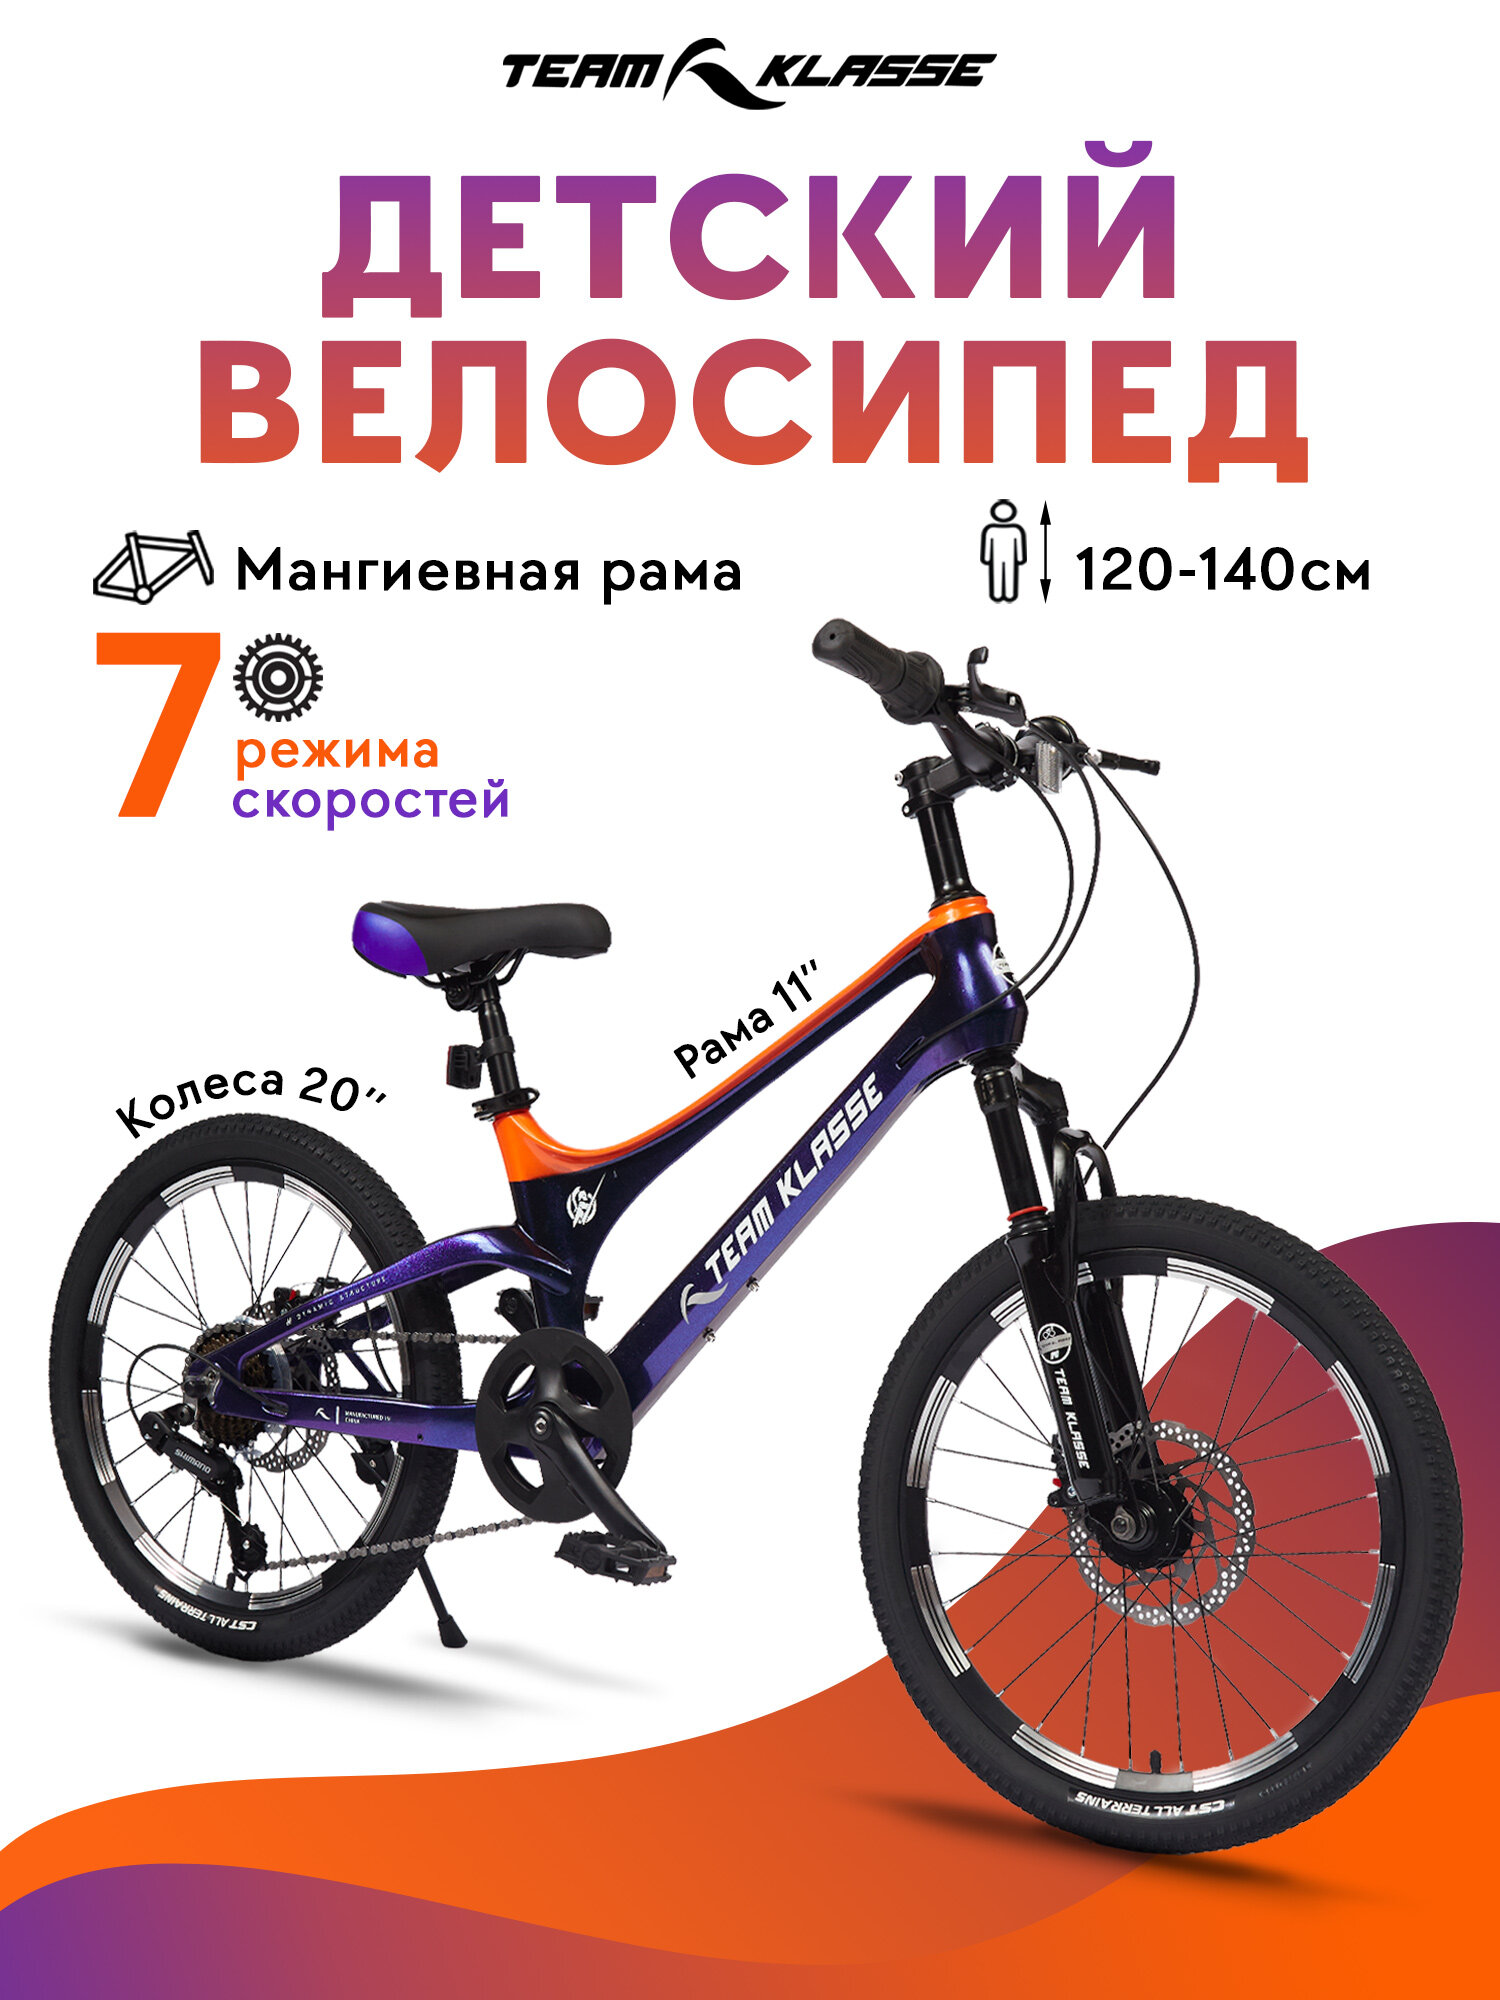 Горный детский велосипед Team Klasse F-3-A, фиолетовый, оранжевый, диаметр колес 20 дюймов